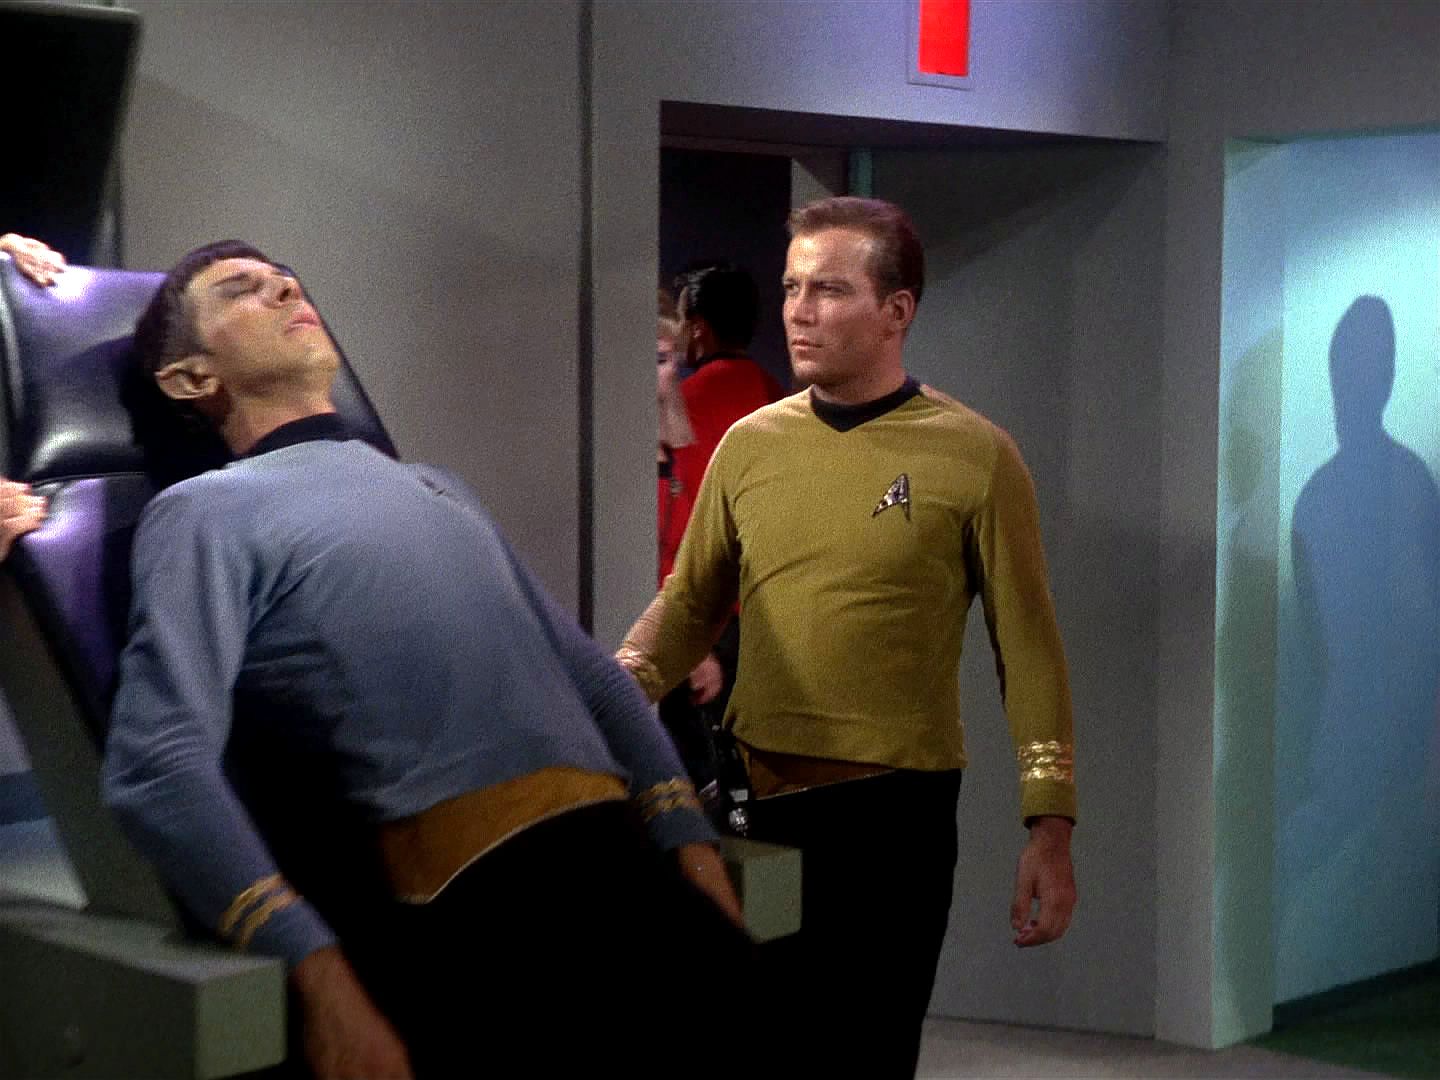 Profesor odešel s "doktorem" na ošetřovnu a podezíravý Spock je doprovázel. Stvoření napadlo i jeho, ale "Spockovi předci plavali v jiných mořích", jeho sůl "Nancy" nechutnala.